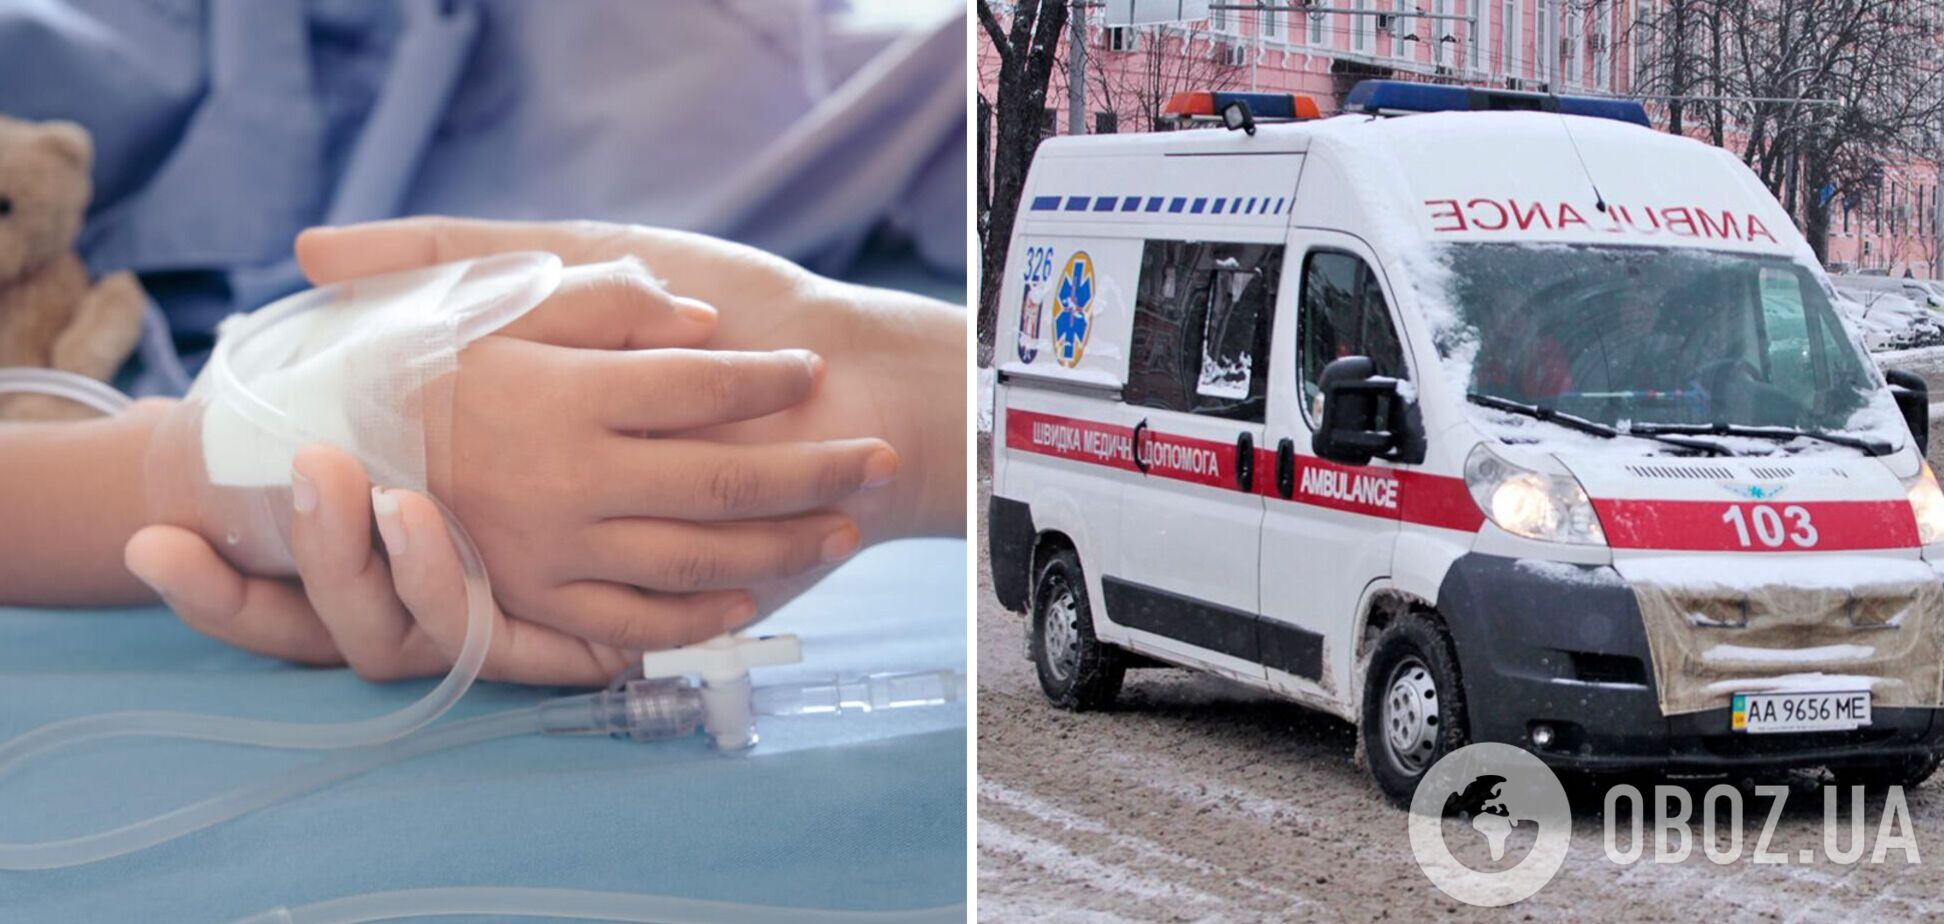 'Медики борются за ее жизнь': появились данные о состоянии девочки, пострадавшей от ракетного удара РФ по Харьковщине